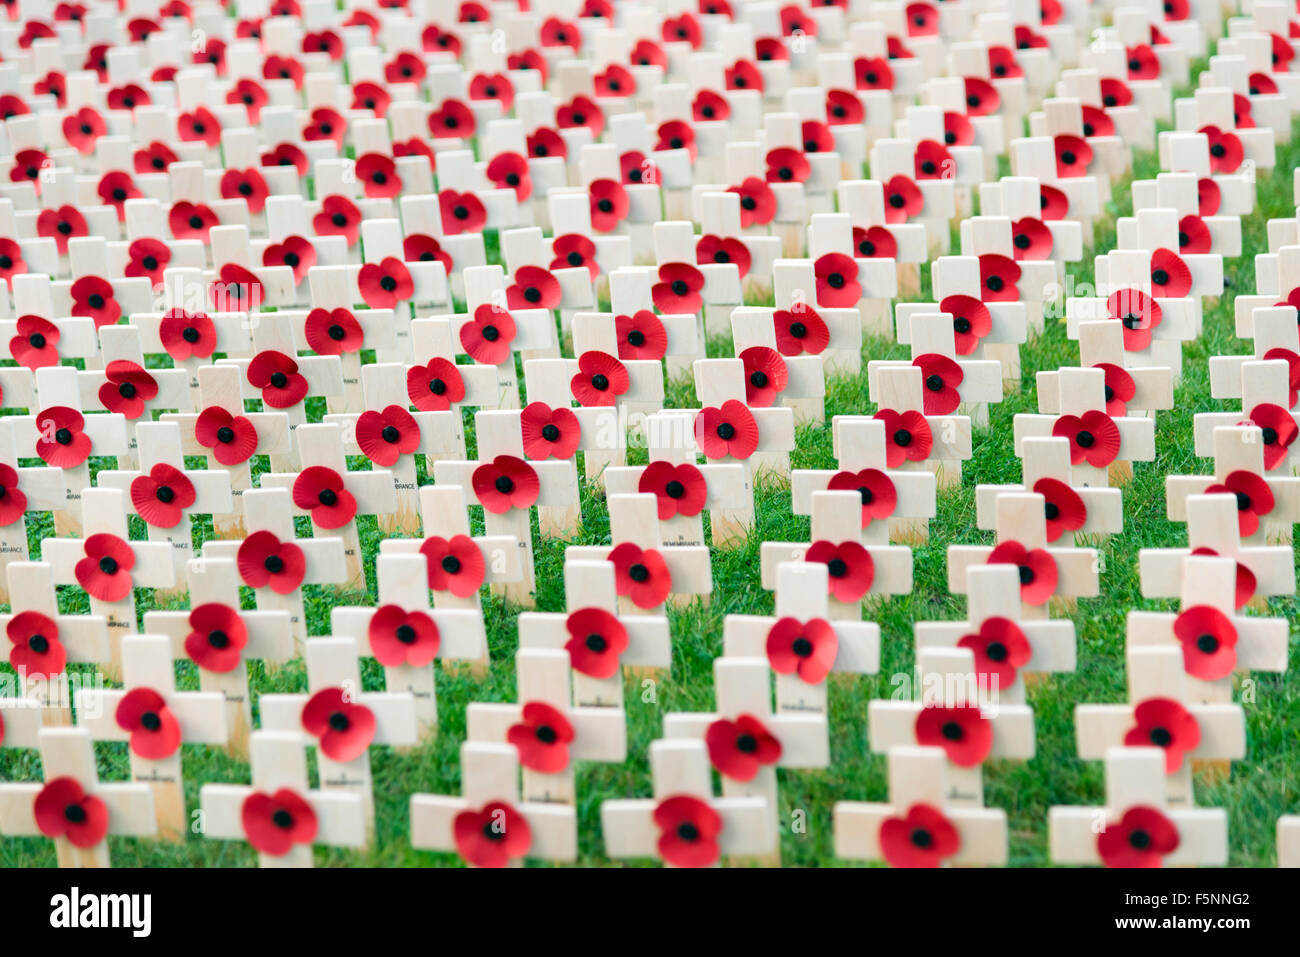 Roter Mohn in einem Feld der Erinnerung außerhalb der Kathedrale von Hereford, Großbritannien. Hölzerne Kreuze erinnern an die Weltkriege, England. Stockfoto